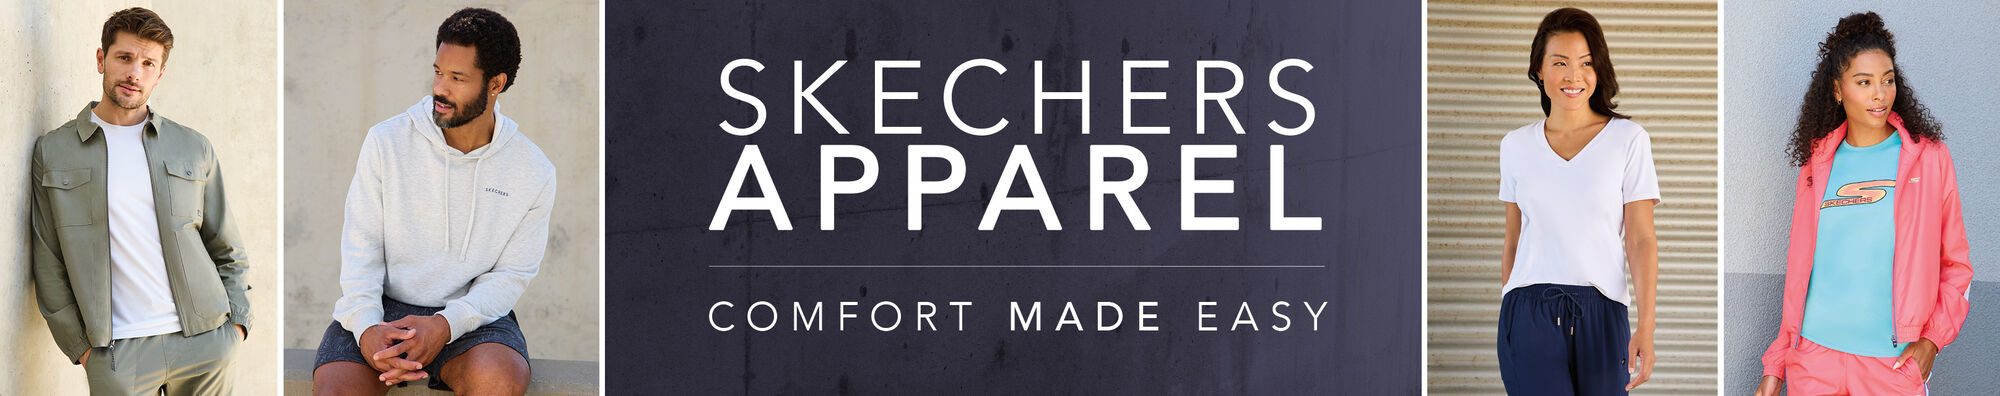 SKECHERS - Varsity vibes with a luxe feel 🇺🇸🏈 #SkechersApparel #fashion  #style #SkechersStyle Shop Skechers Apparel in the link below:  skechers.com/en-us/apparel